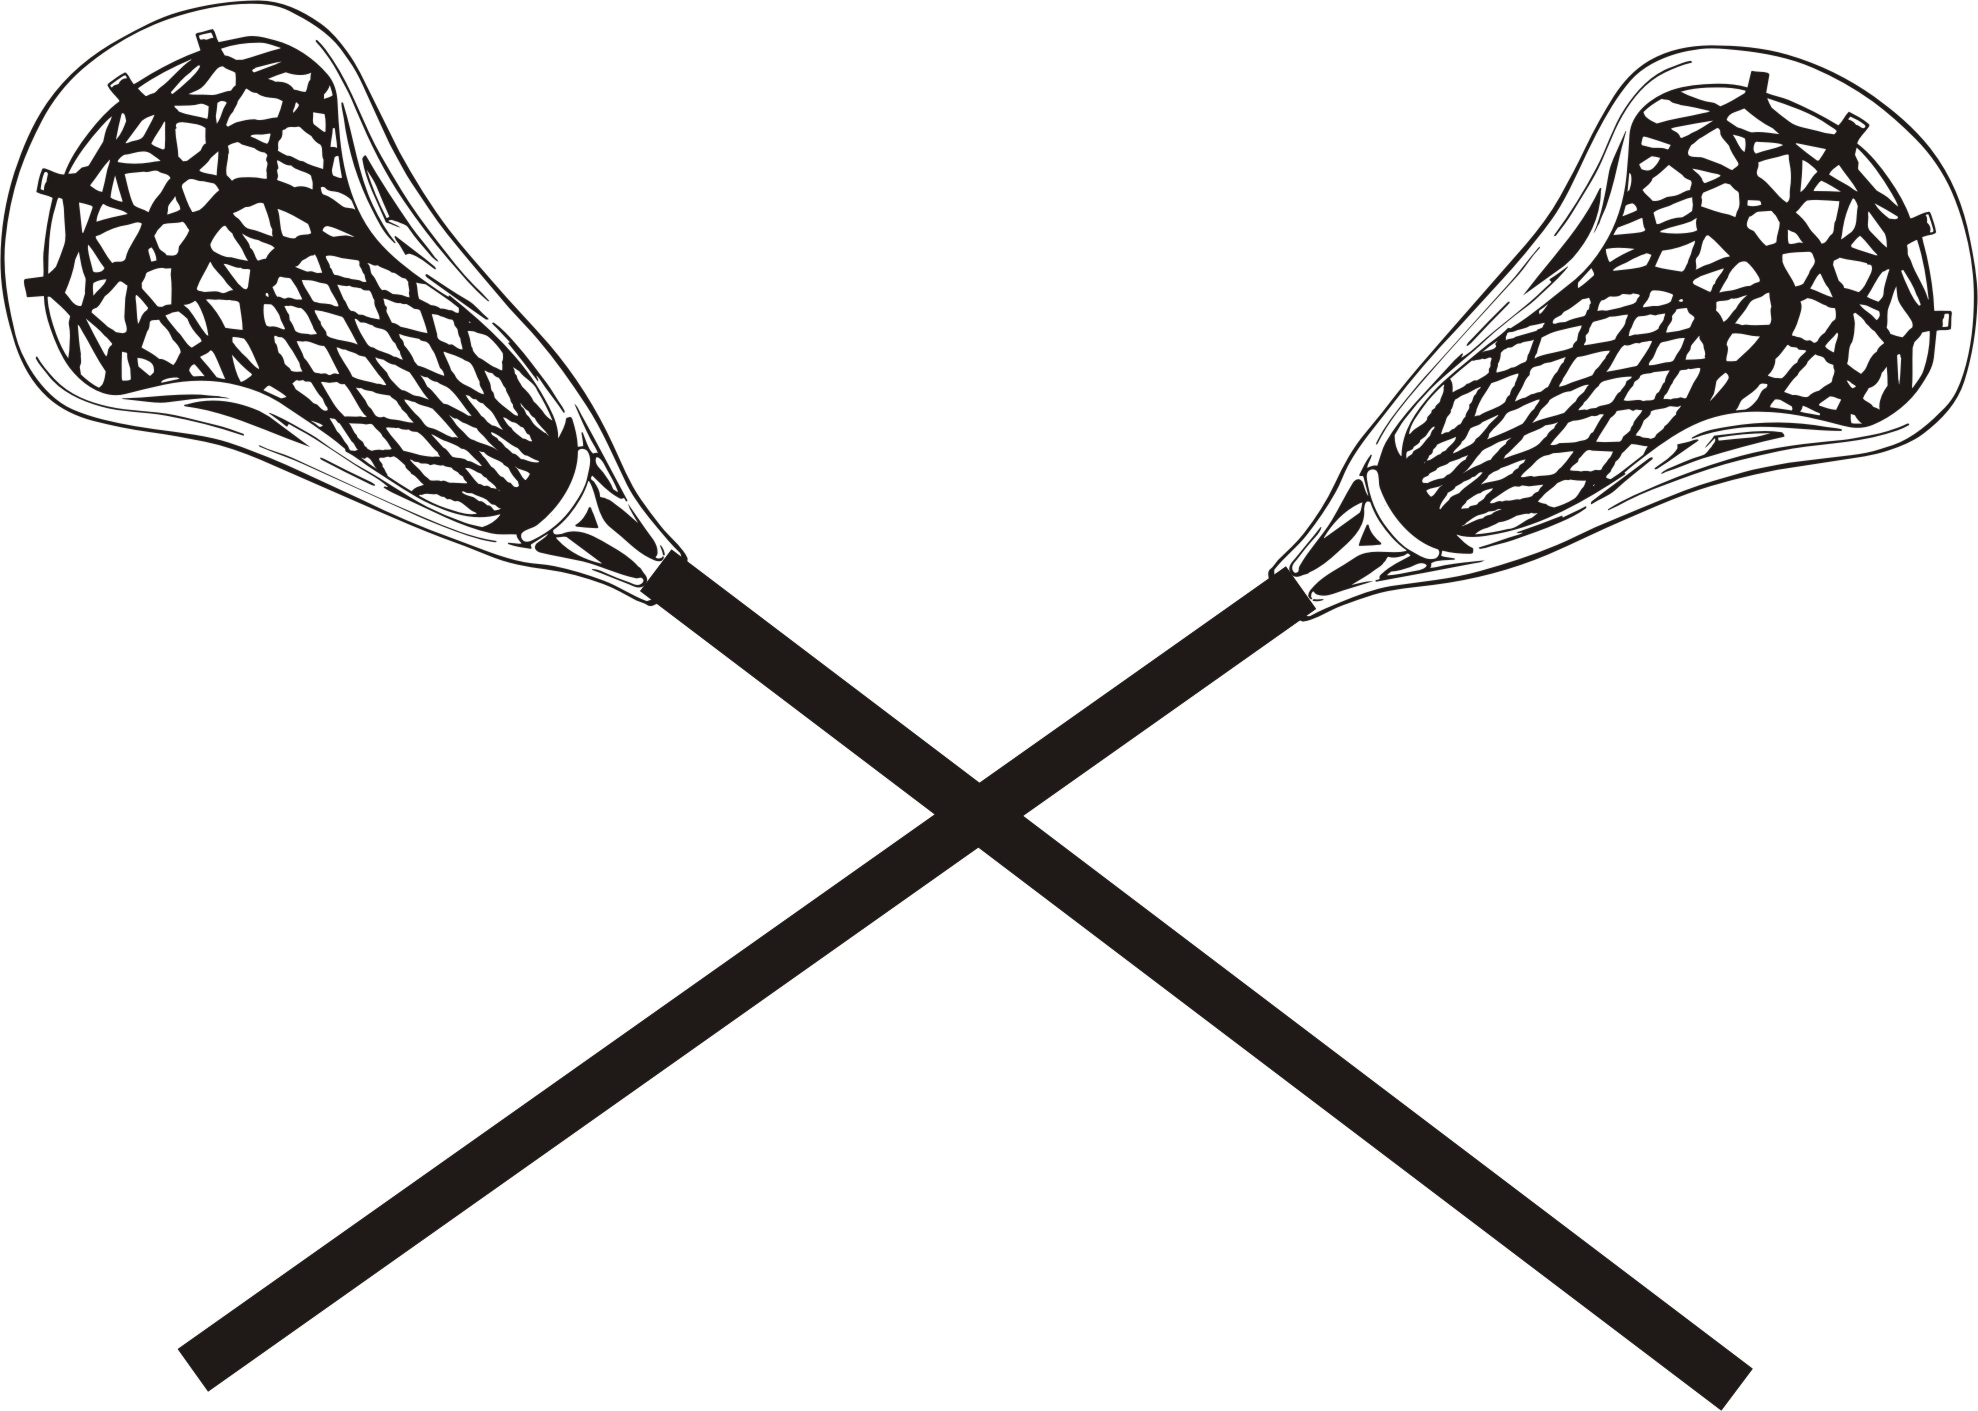 Lacrosse clip art images illustrations photos